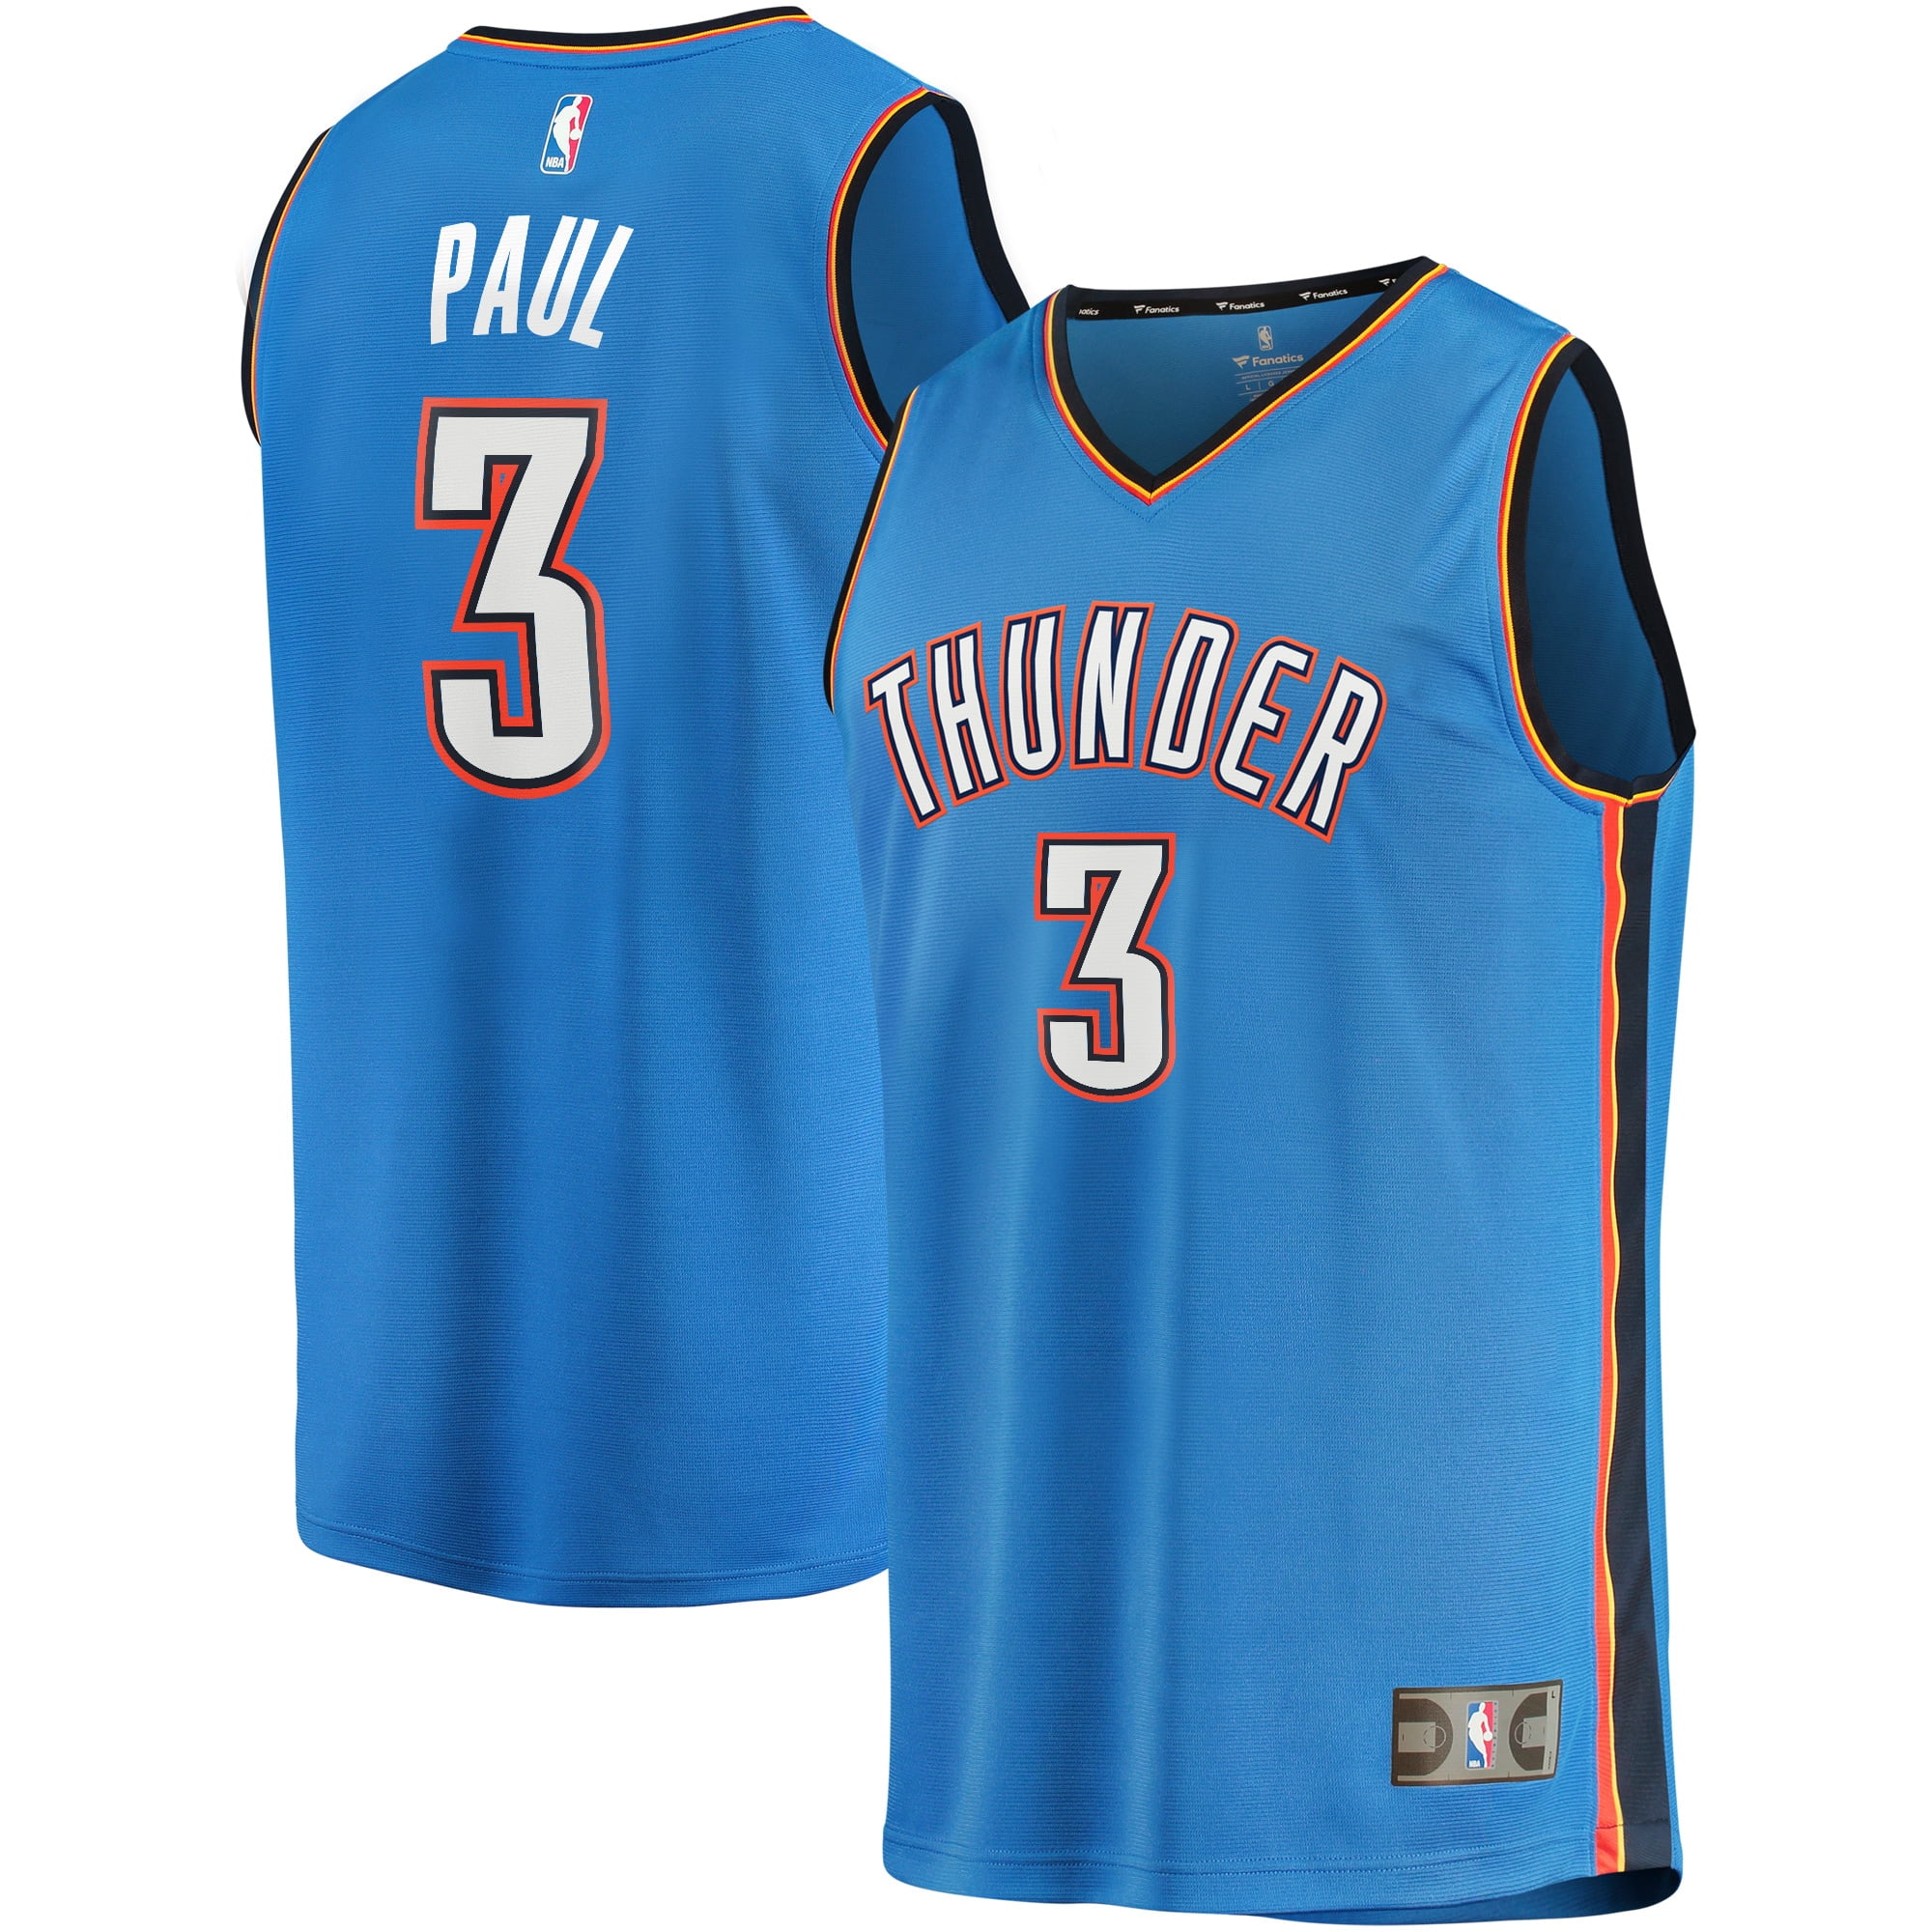 Oklahoma City Thunder Fanatics Branded 